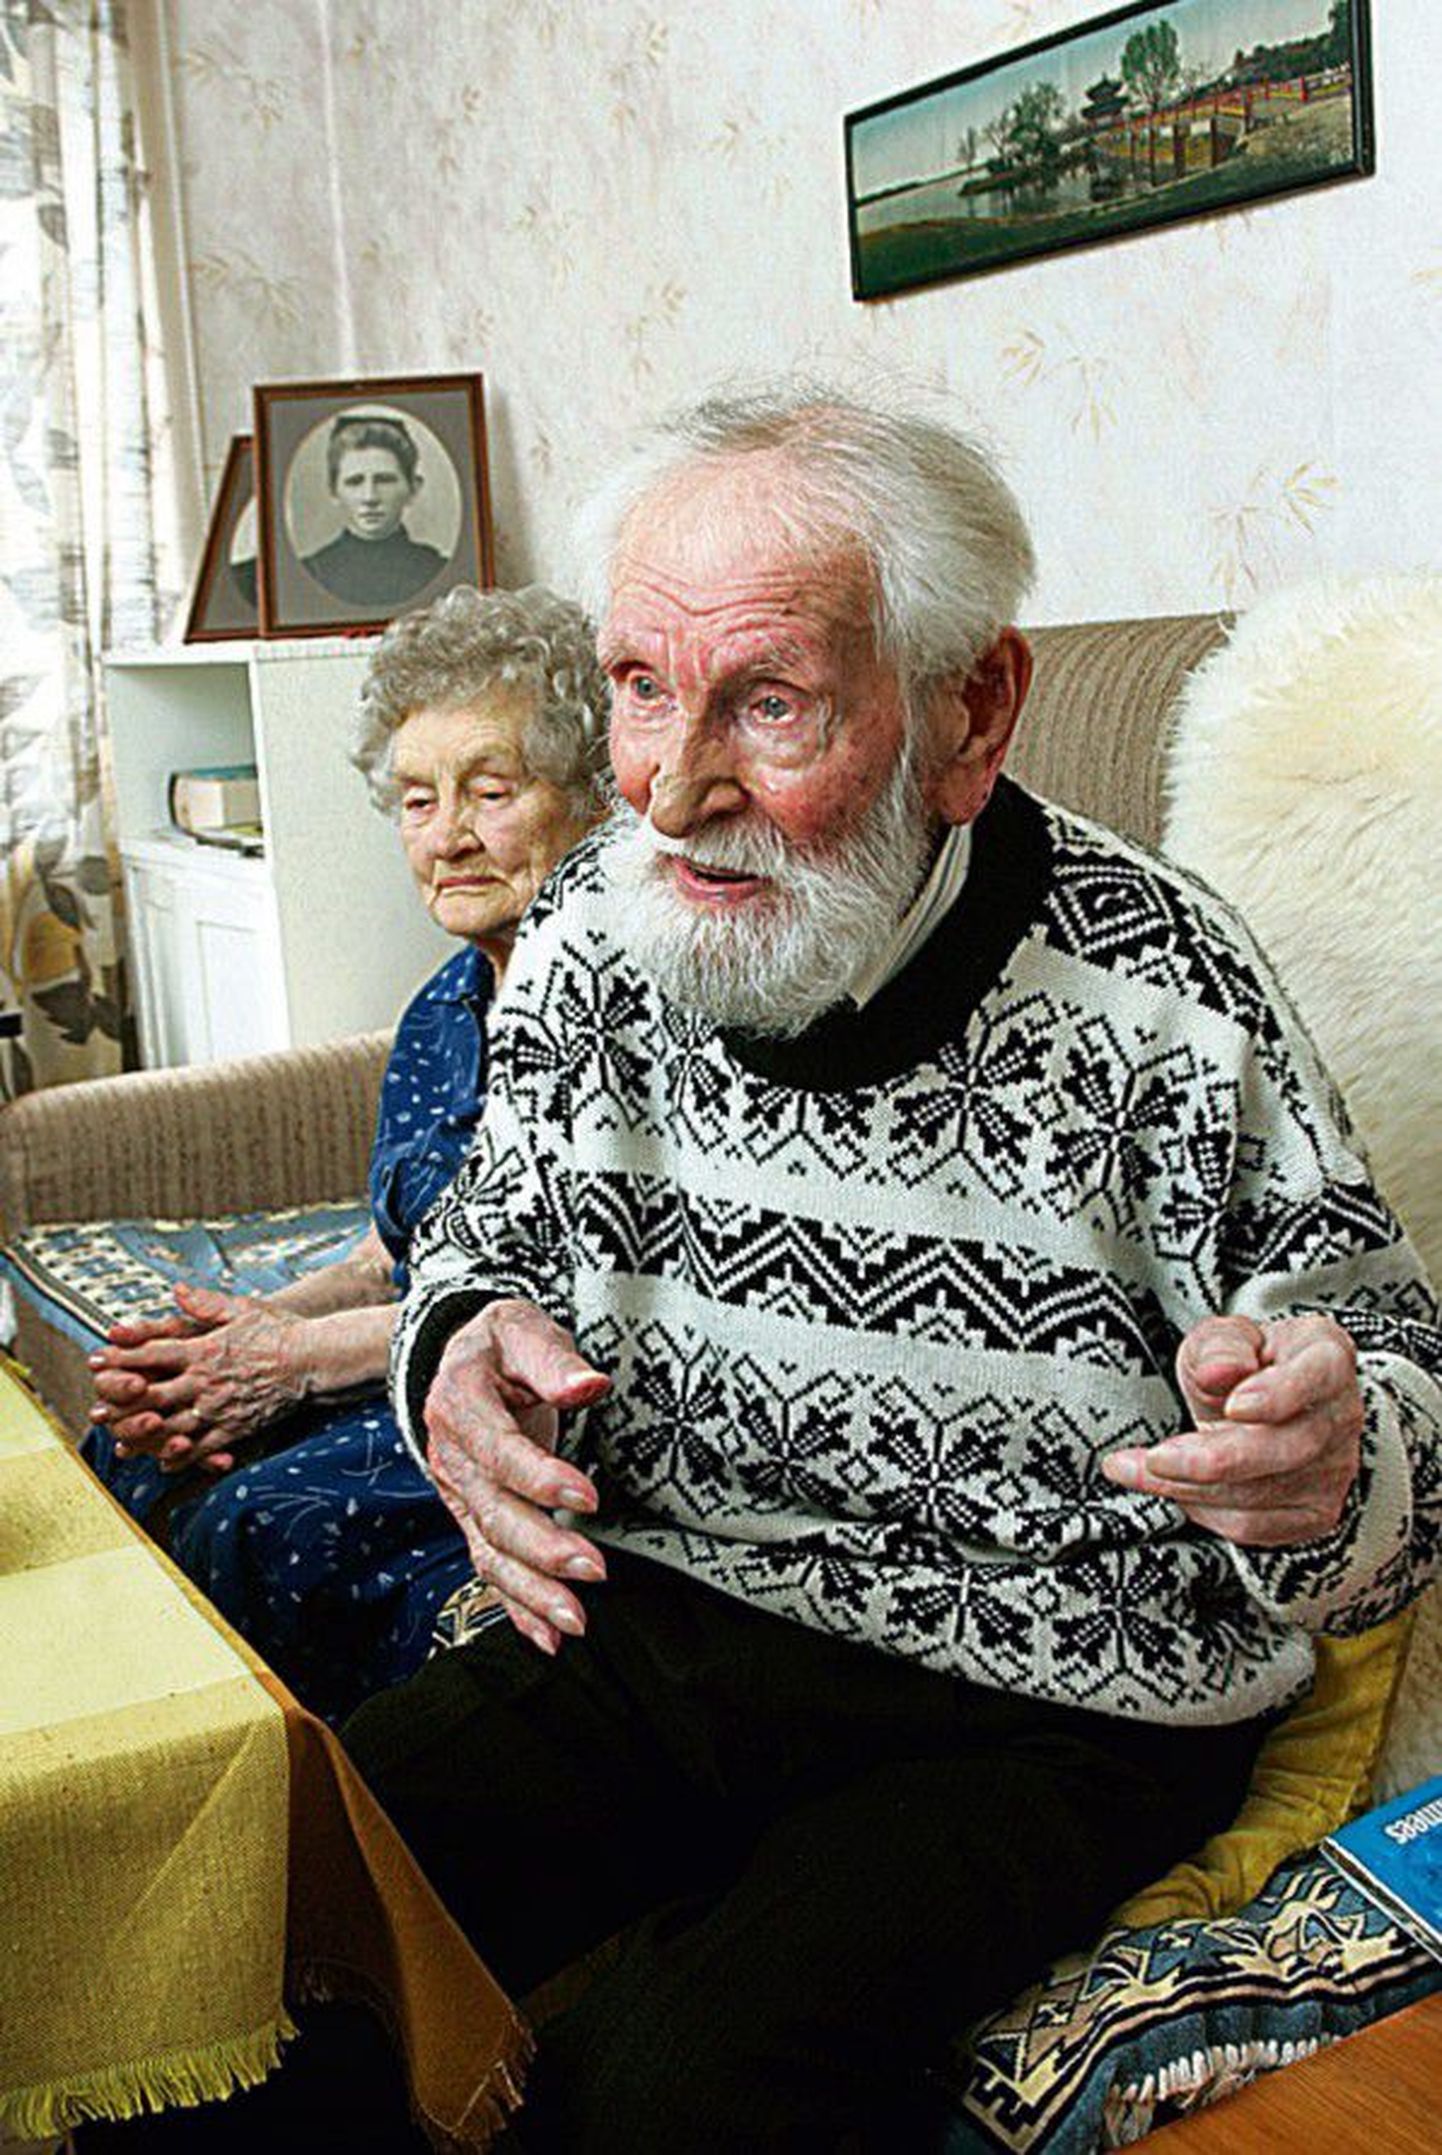 Nagu kakskümmend aastat nooremad: Karl Plutus elab ühes korteris oma 98-aastase õe Aliidega, kes jäi pensionile 85-aastaselt. Karl töötas 89. eluaastani.